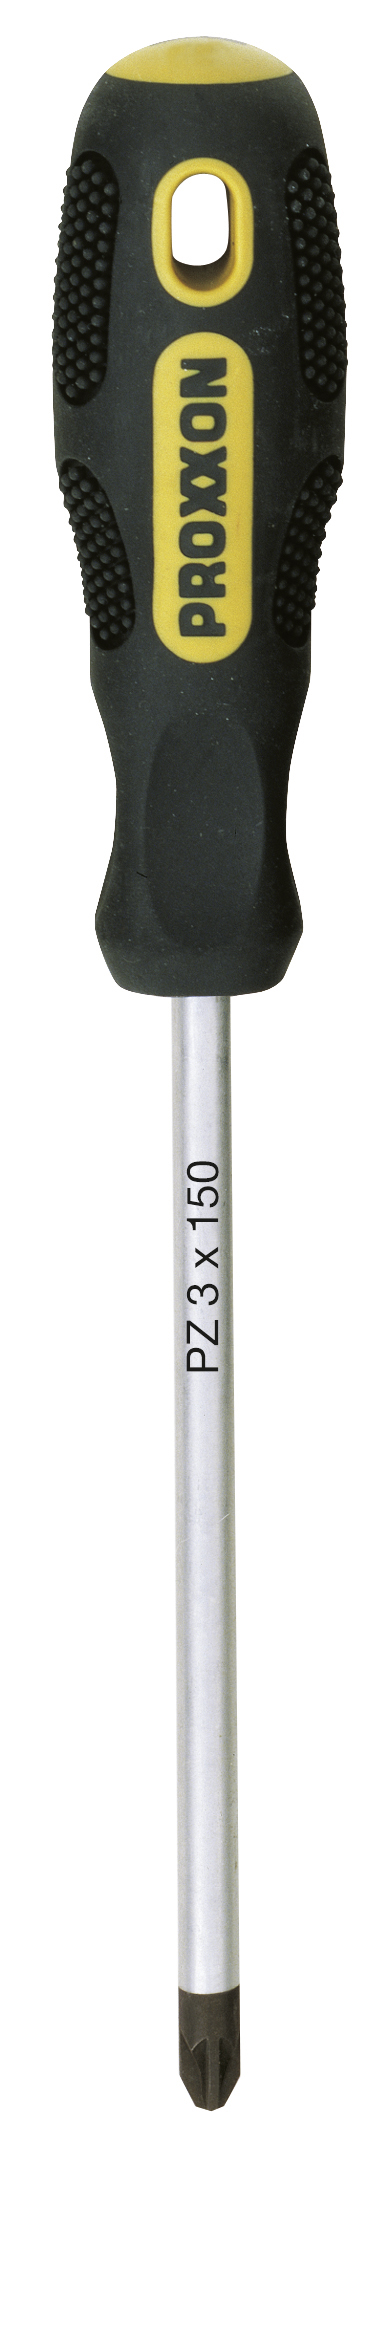 Tournevis FLEX-DOT cruciforme PZ 3 x 150 | PROXXON